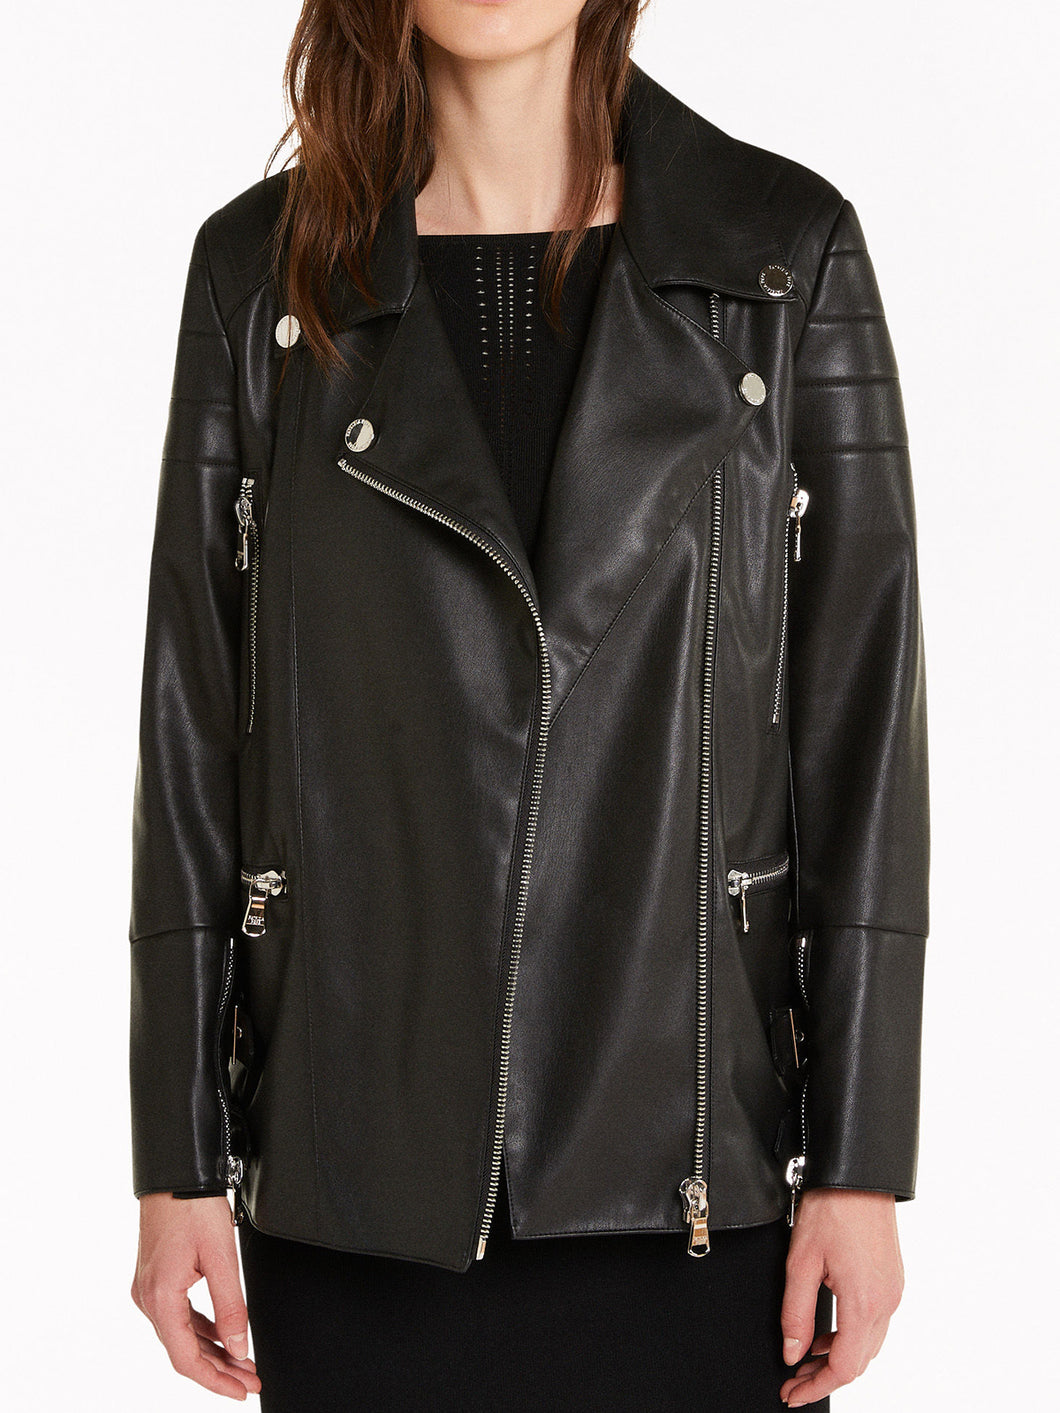 Womens Stylish Black Real Leather Jacket